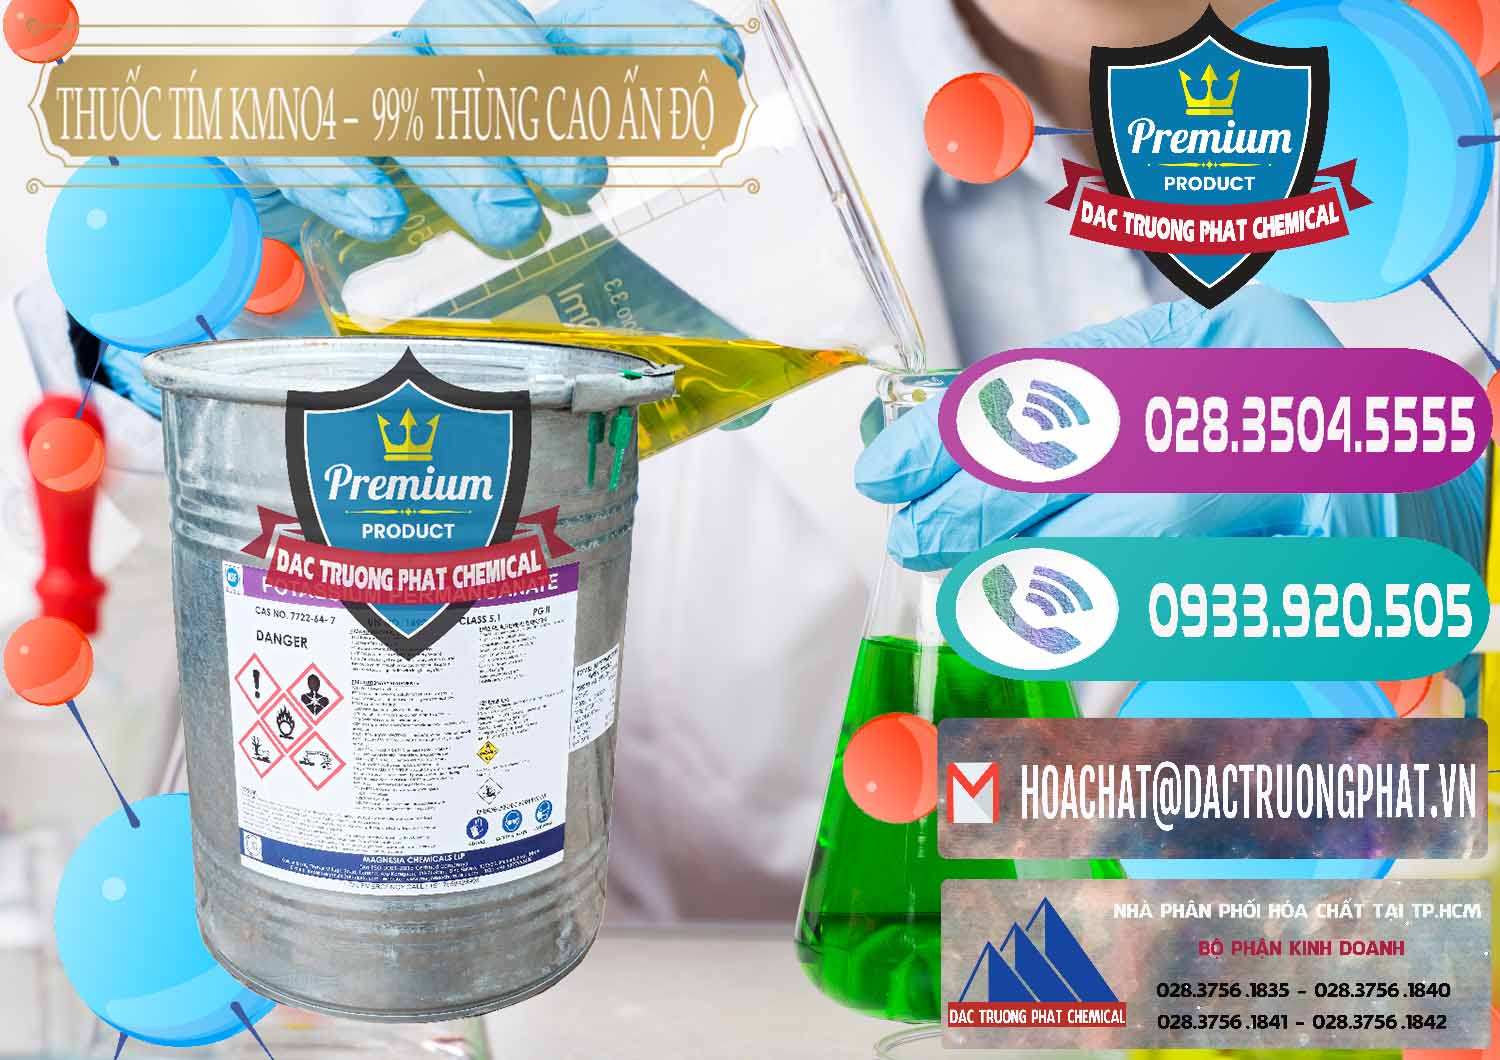 Cty chuyên bán ( phân phối ) Thuốc Tím - KMNO4 Thùng Cao 99% Magnesia Chemicals Ấn Độ India - 0164 - Nơi chuyên kinh doanh & phân phối hóa chất tại TP.HCM - hoachatxulynuoc.com